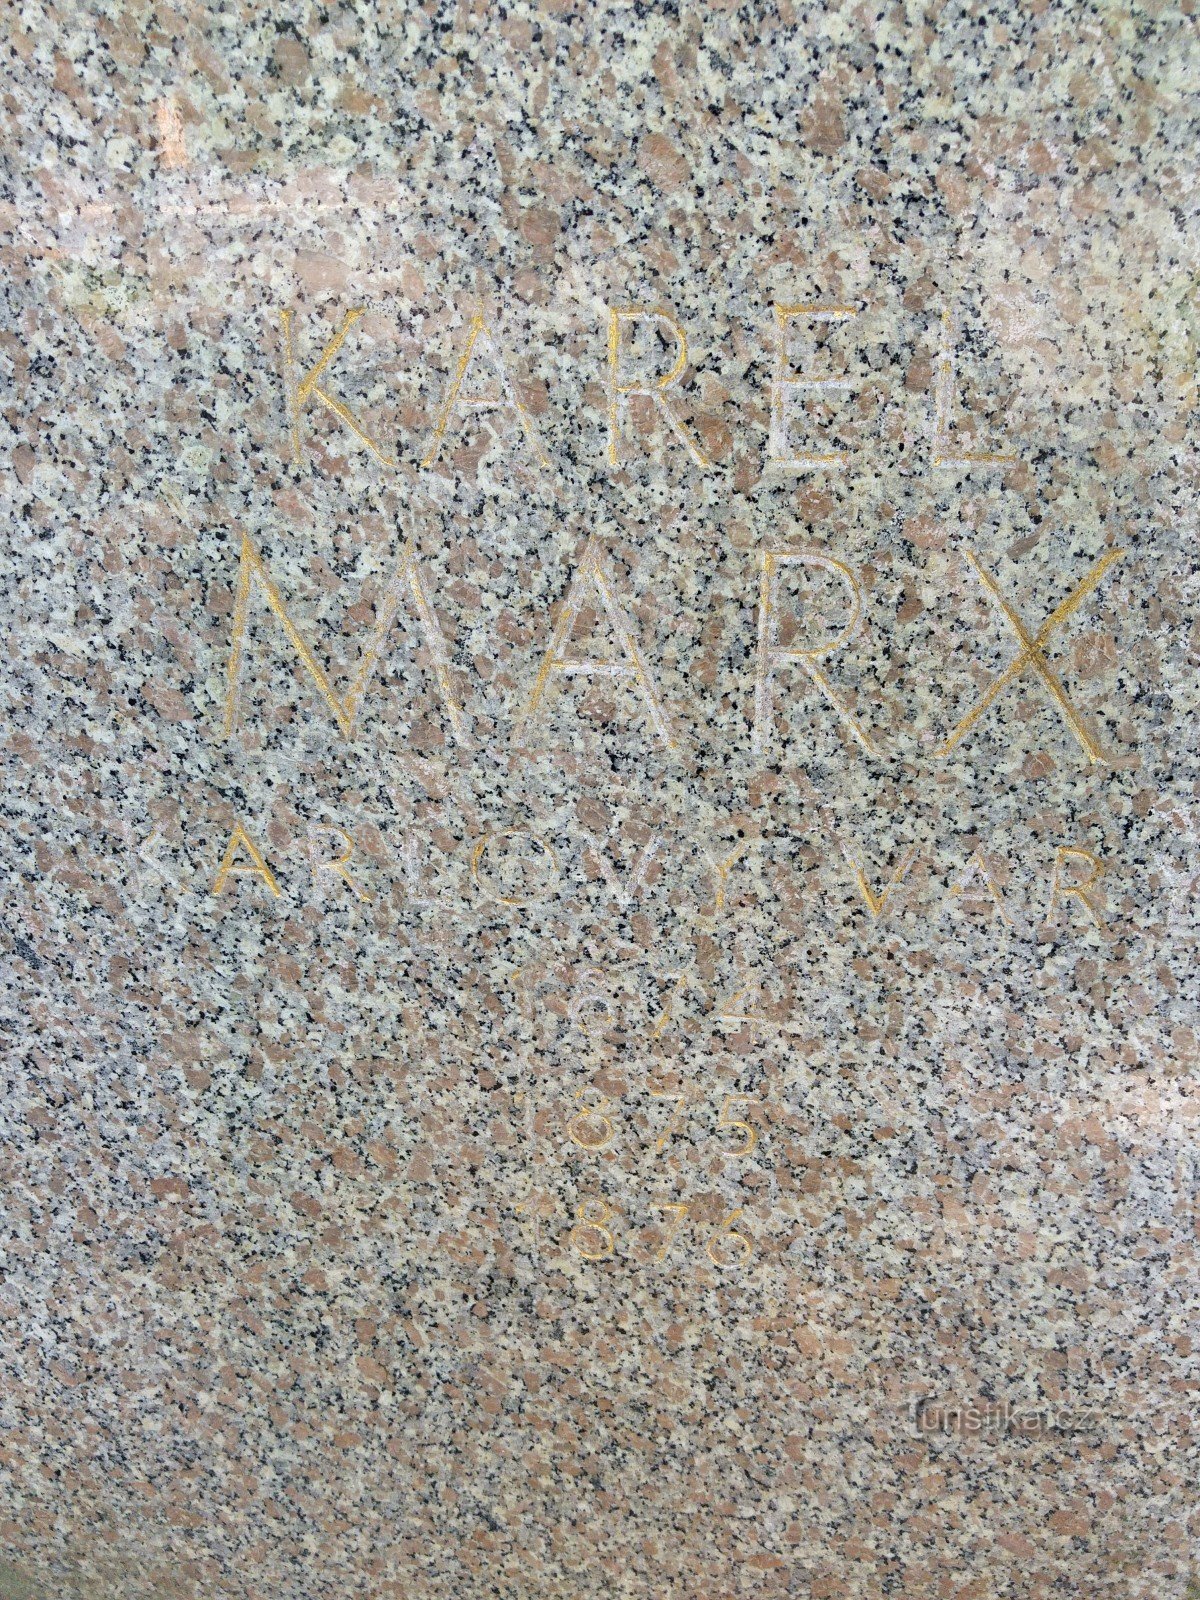 カール マルクスの記念碑 - カルロヴィ ヴァリ